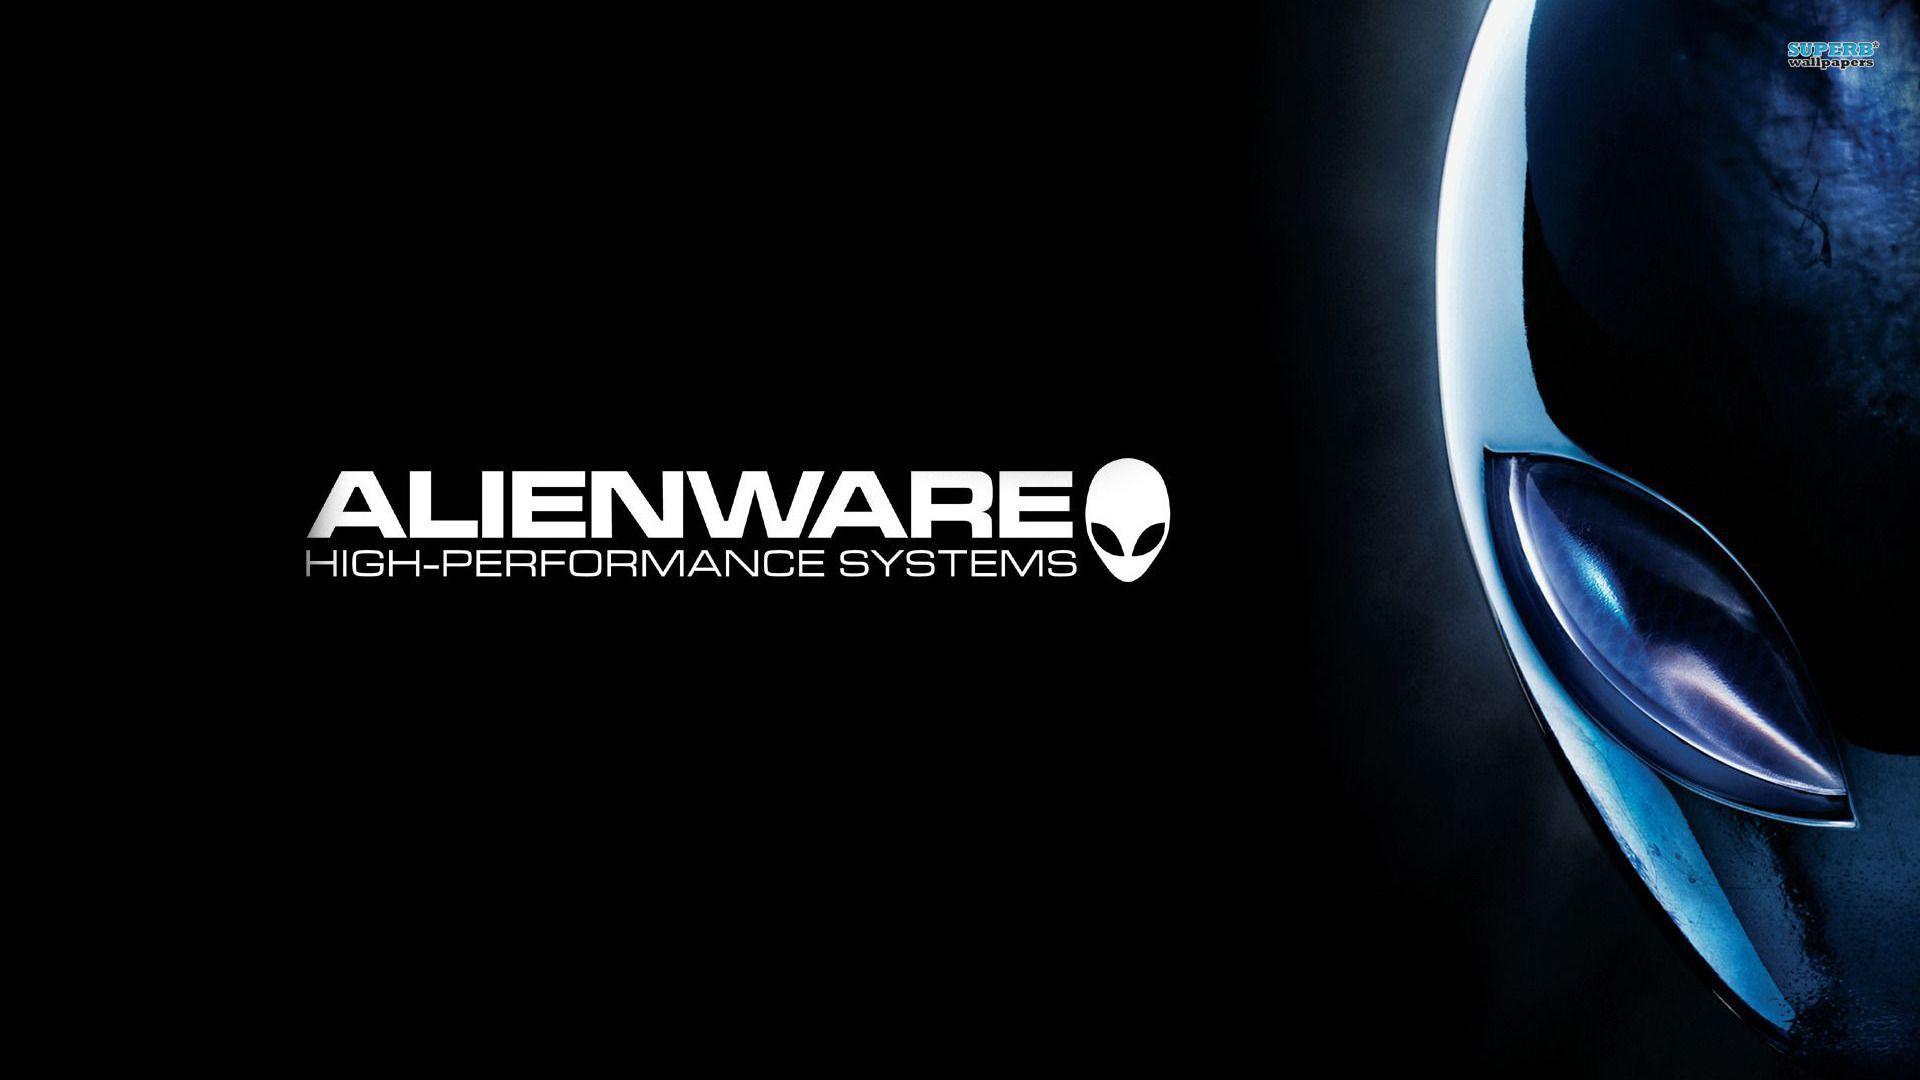 Alienware Wallpaper - Computer Wallpapers - - Alienware Hd Wallpaper For Pc , HD Wallpaper & Backgrounds